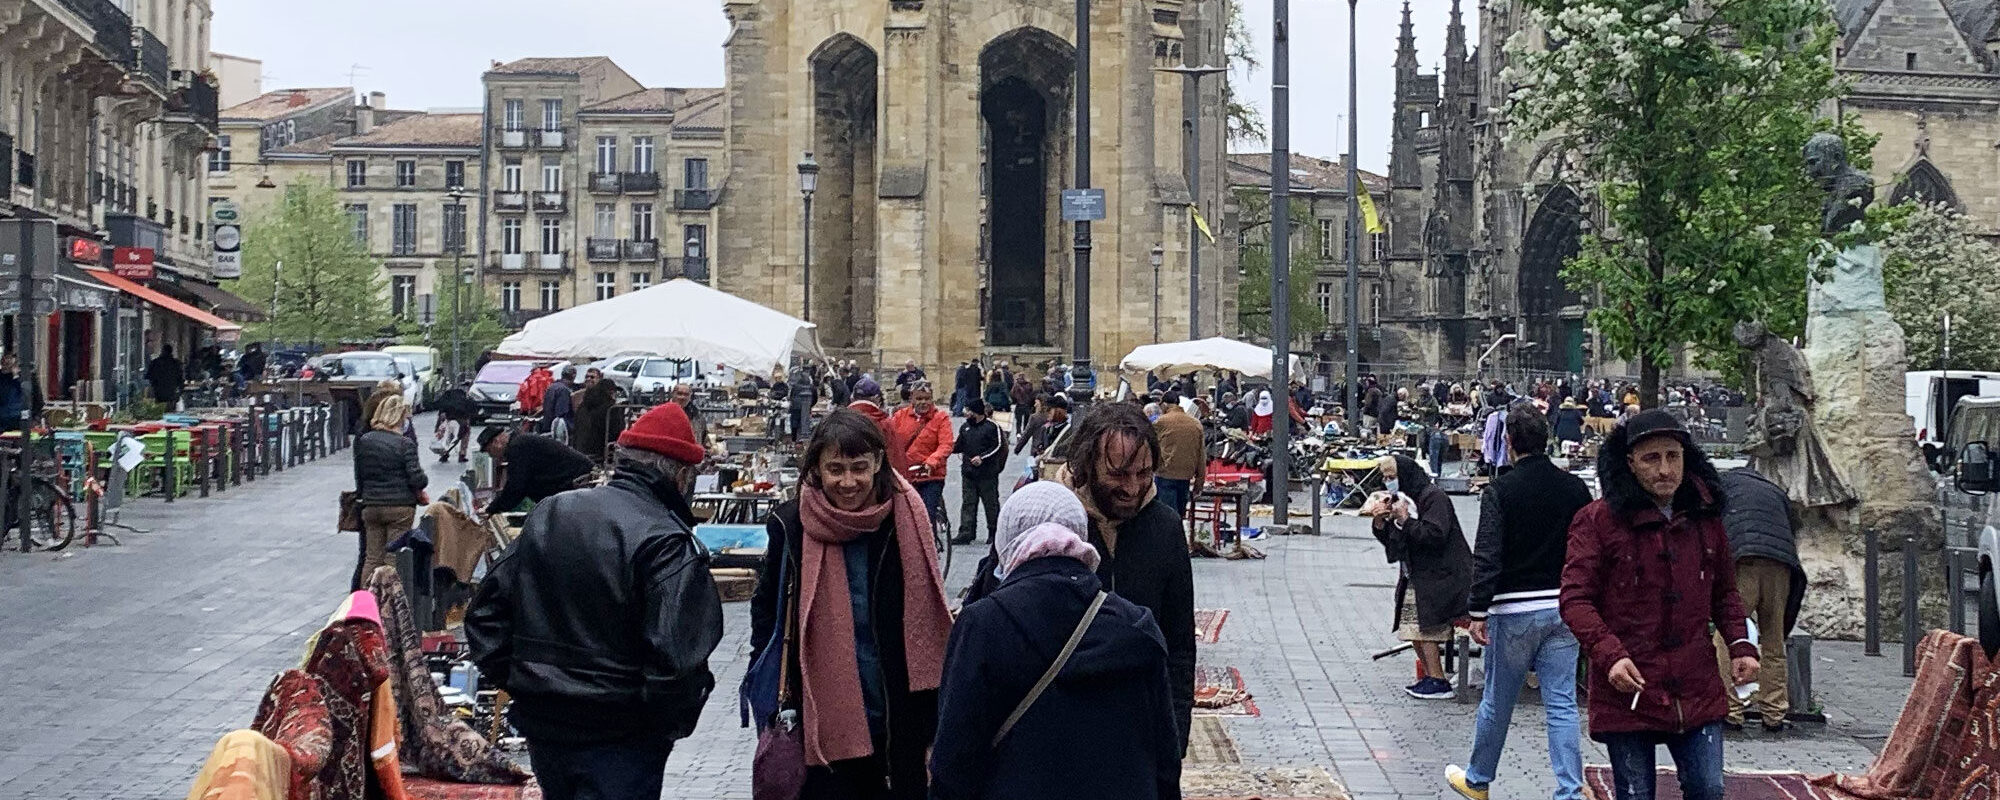 La poire et les marchés coupés en deux entre la place Saint-Michel et les quais